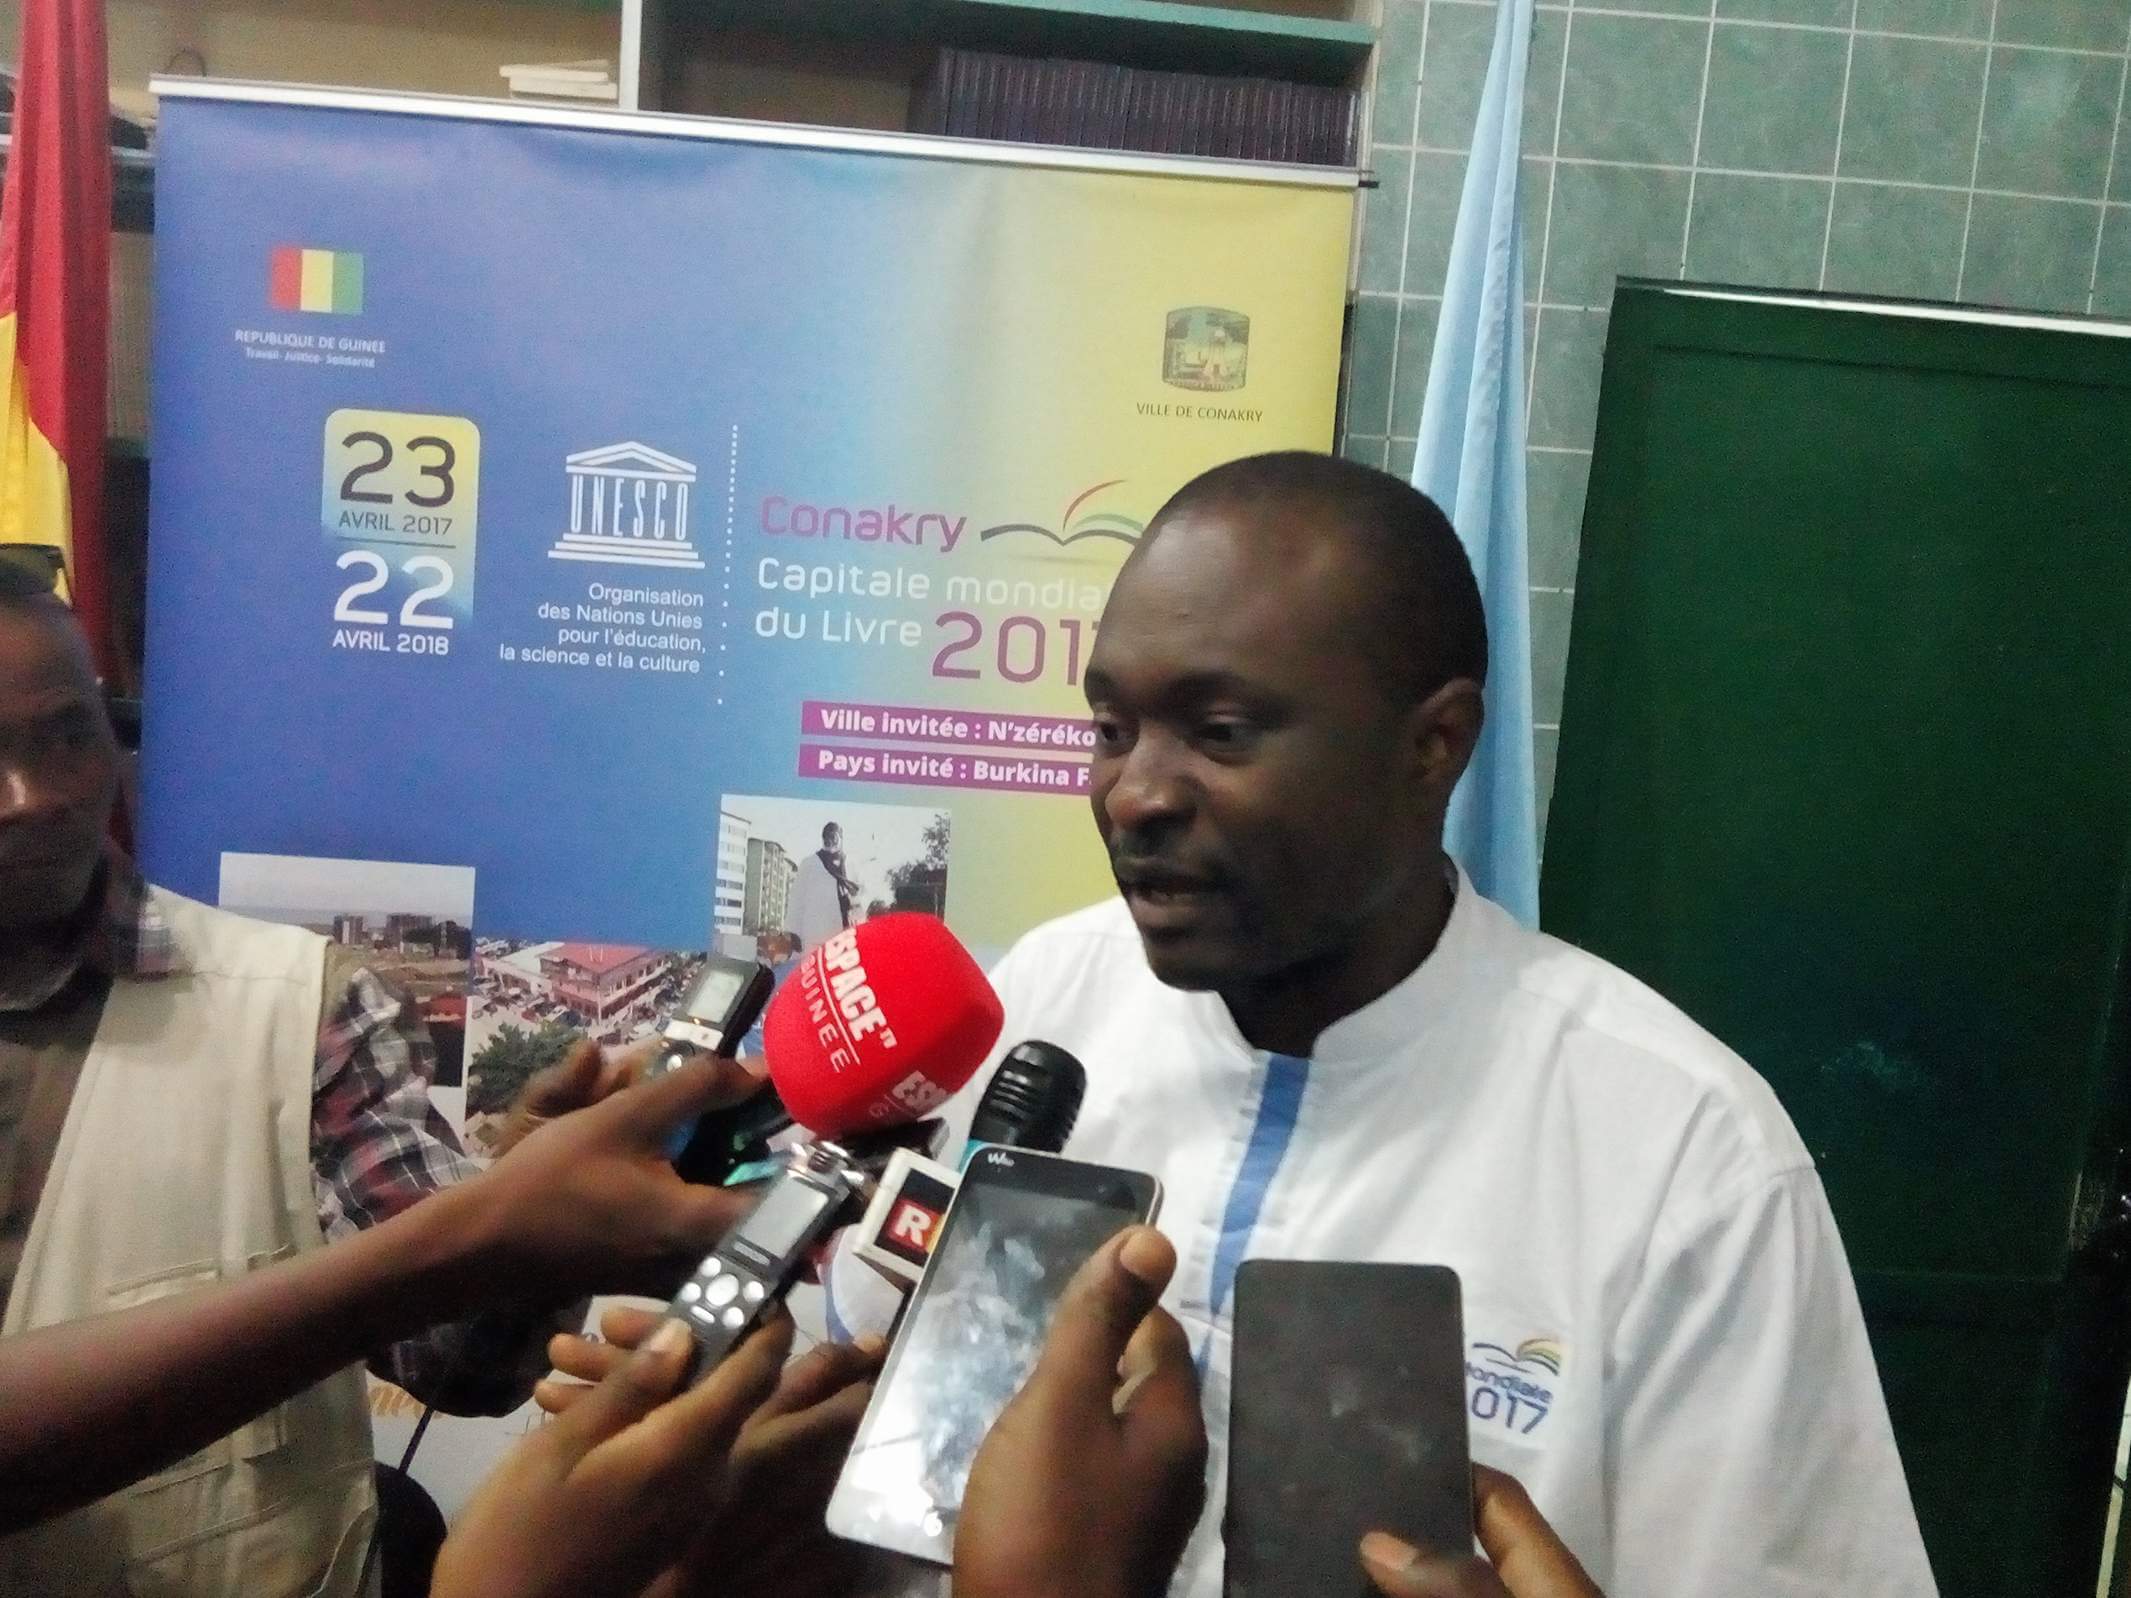 Conakry, capitale mondiale du livre 2017 : Le Commissariat général dresse un bilan reluisant